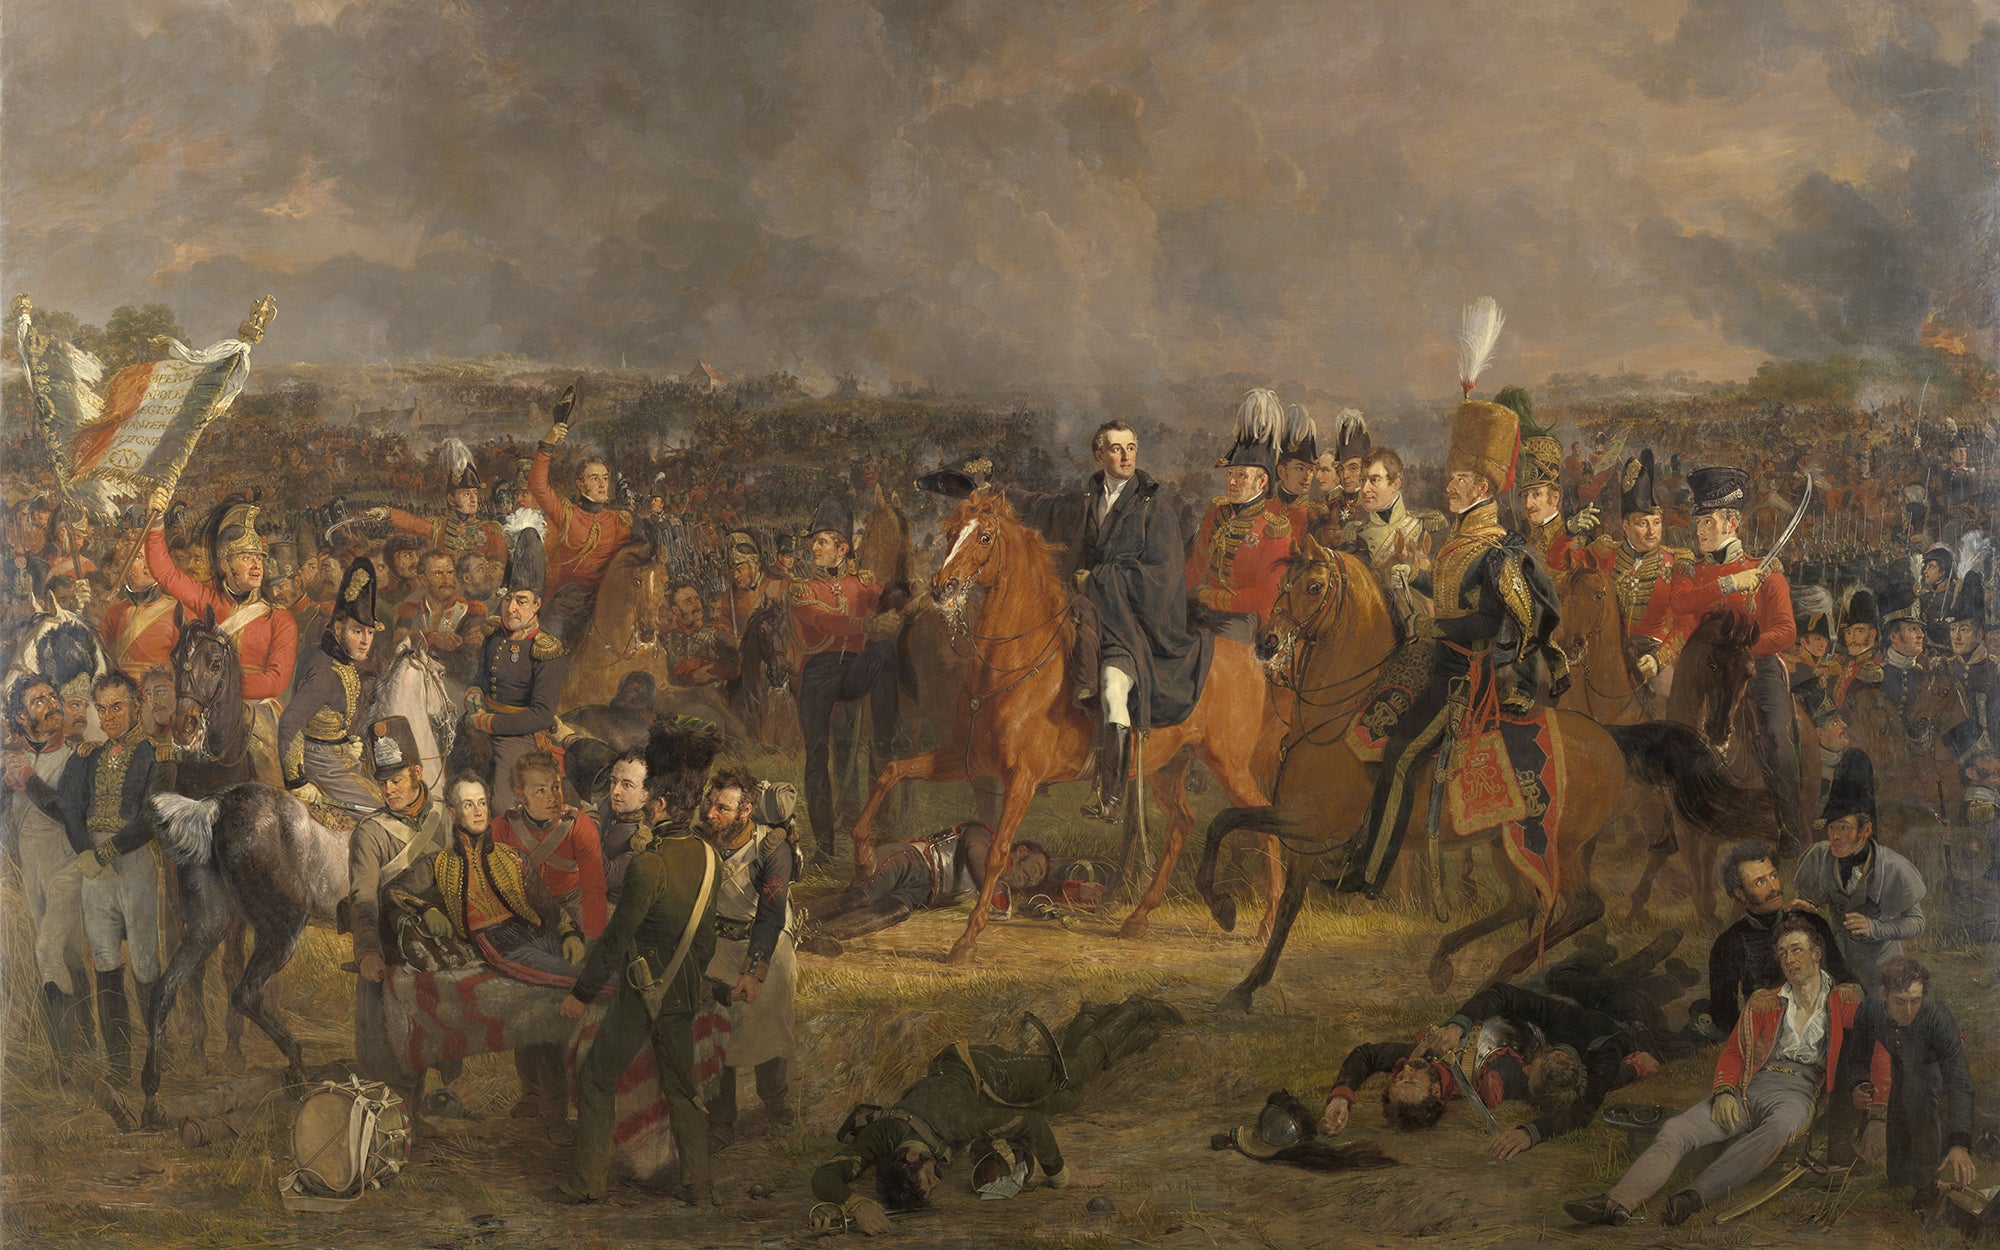 De Slag bij Waterloo